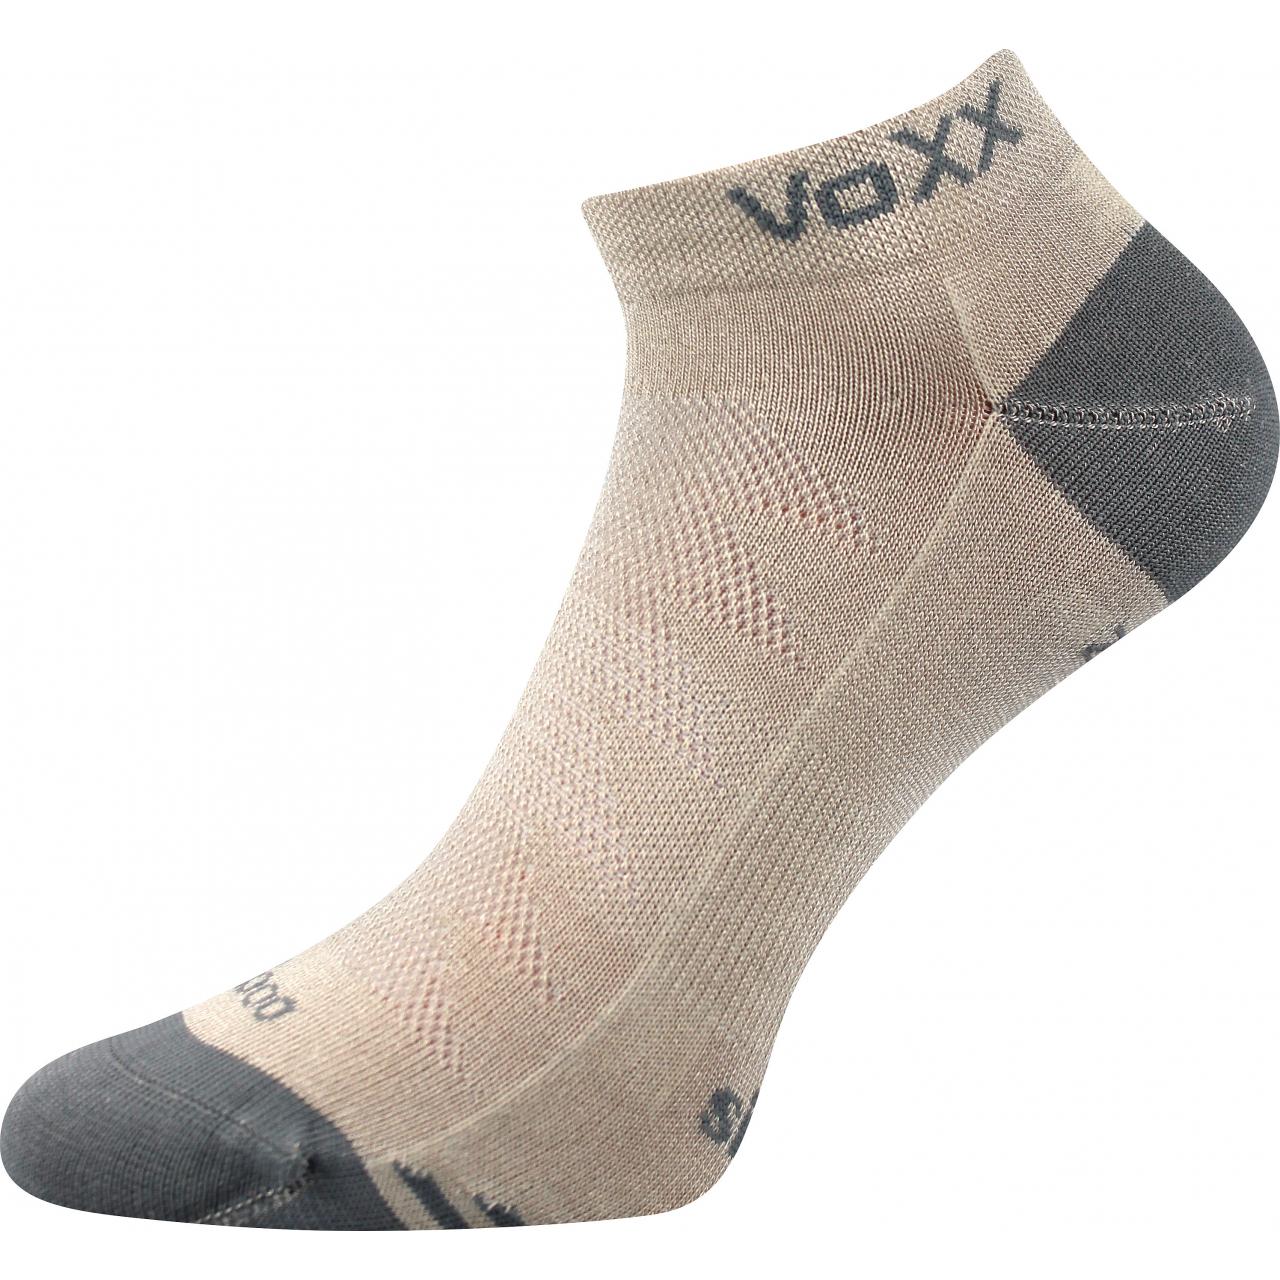 Ponožky sportovní unisex Voxx Bojar - béžové-šedé, 43-46